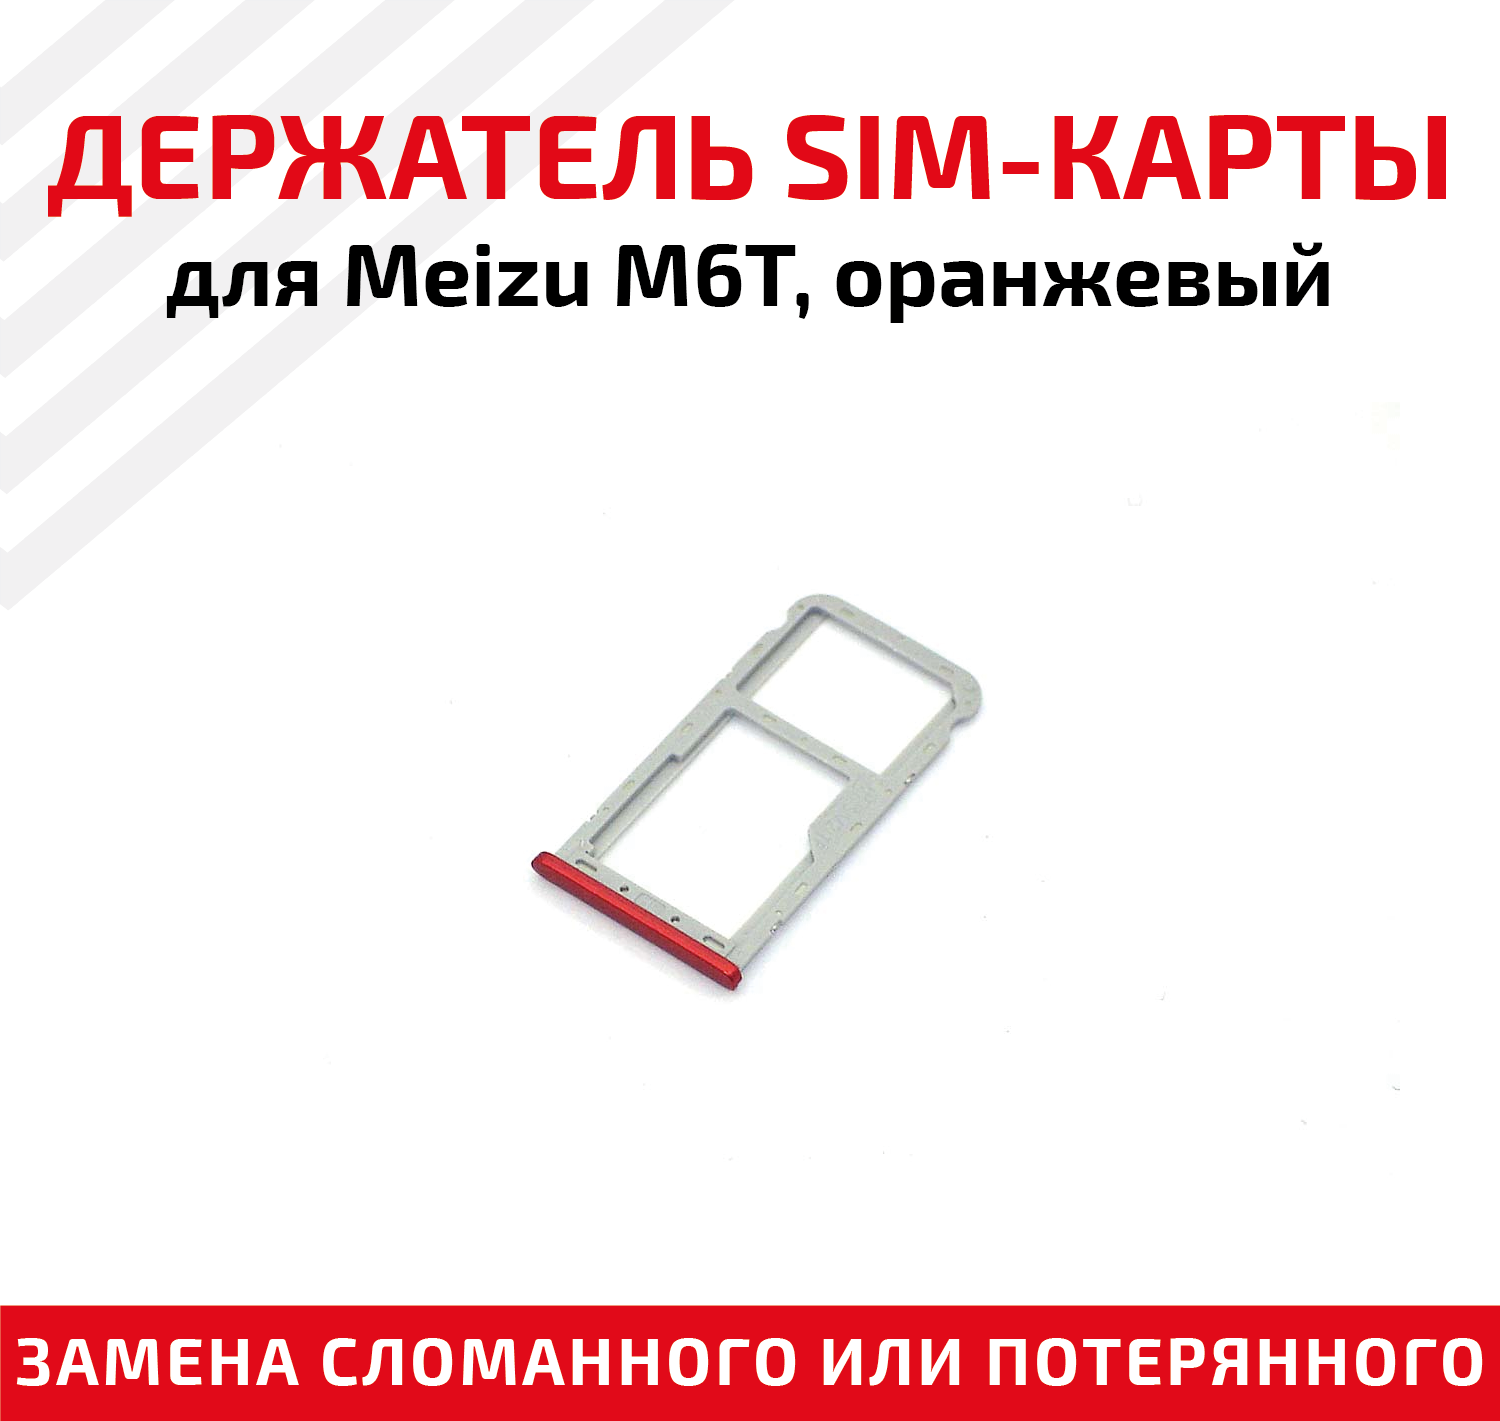 Лоток (держатель, контейнер, слот) SIM-карты для мобильного телефона (смартфона) Meizu M6T, оранжевый